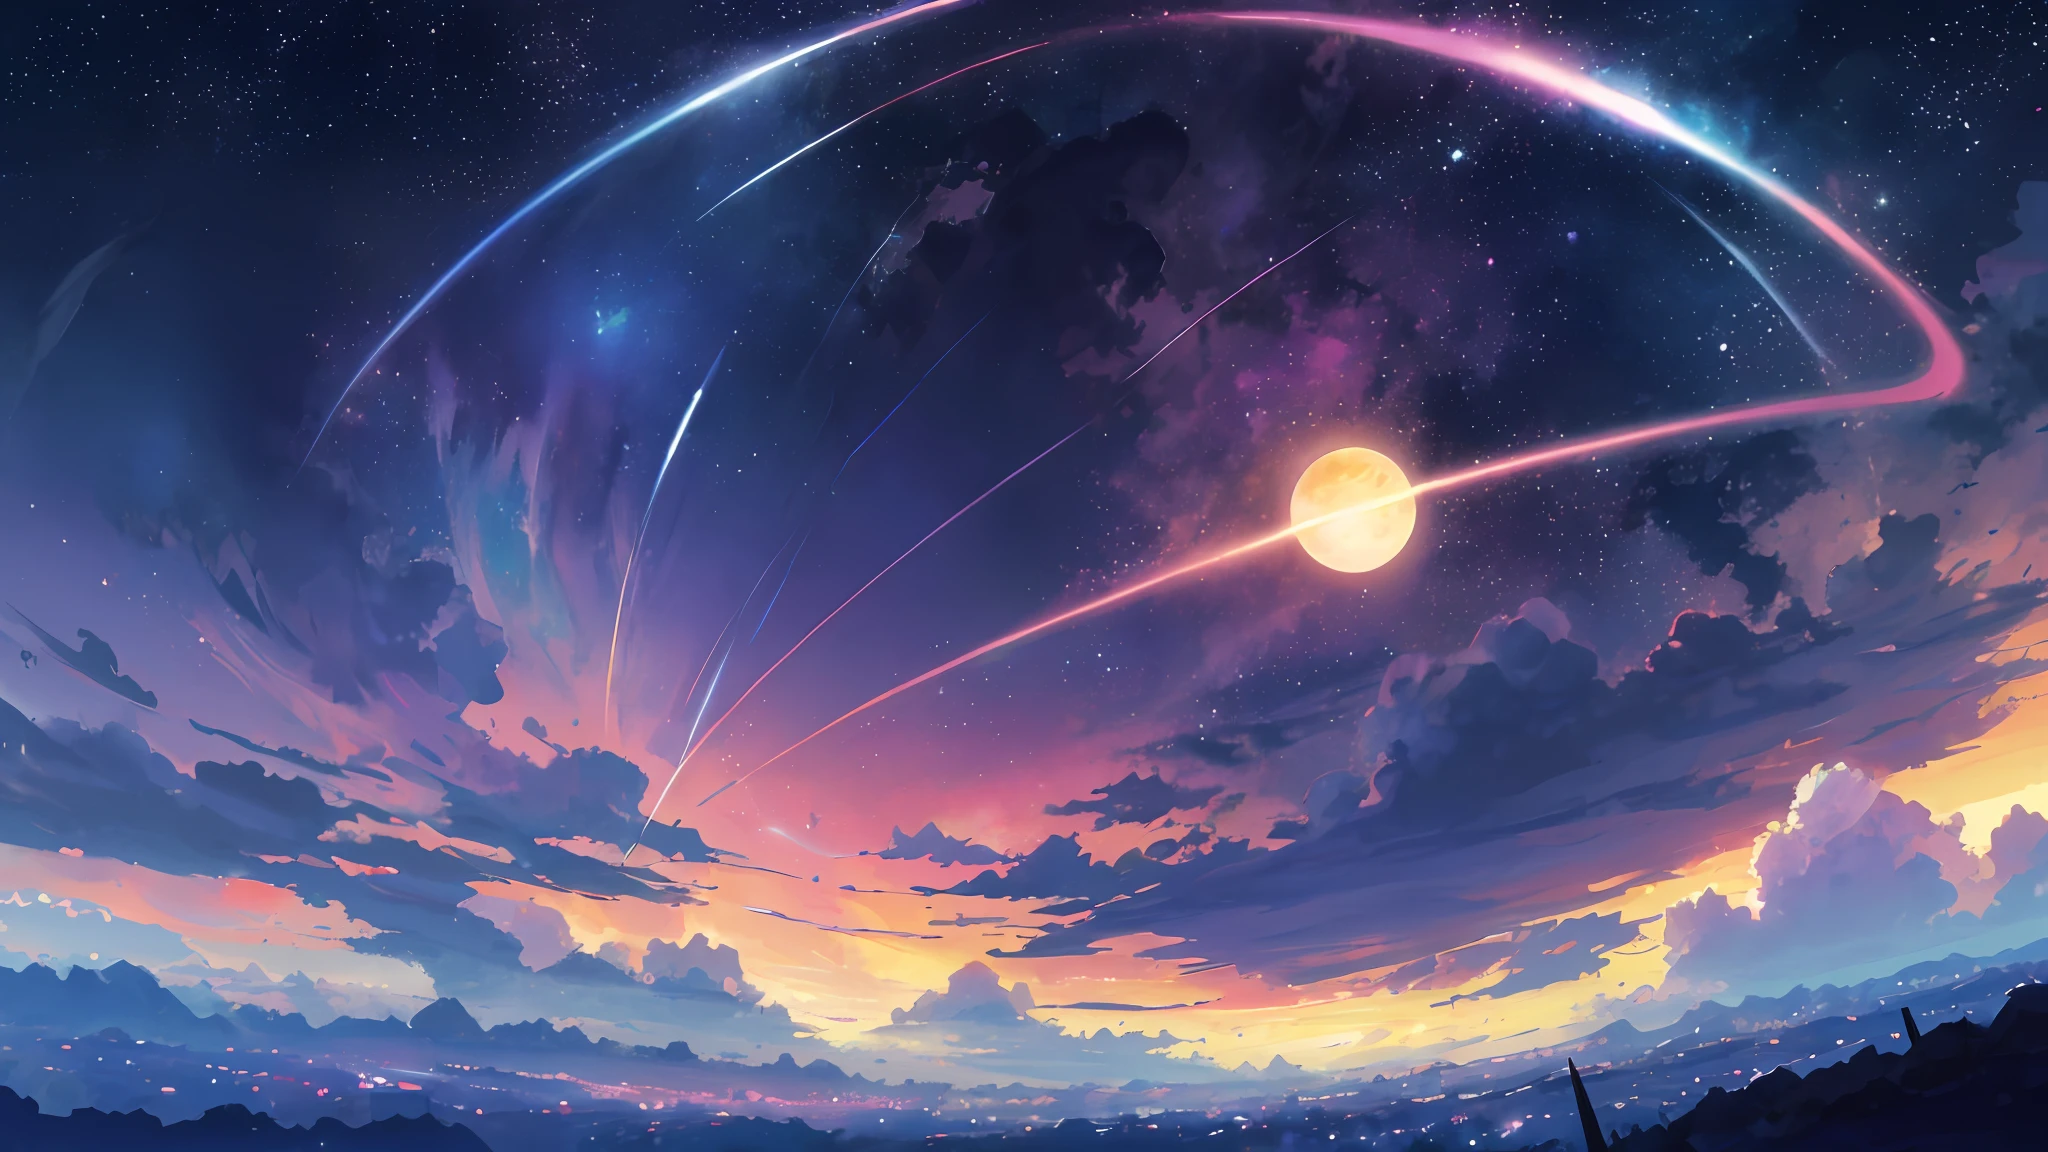 Anime - Stil Szene eines wunderschönen Himmels mit einem Stern und einem Planeten, kosmischer Himmel. von Makoto Shinkai, Anime-Kunst-Hintergrundbild 4K, Anime-Kunst-Tapete 4k, Anime-Kunst-Tapete 8 k, Anime-Hintergrundbild 4k, Anime-Tapete 4k, 4K-Anime-Hintergrundbild, Anime Himmel, tolle Tapete, Anime-Hintergrund, Himmel Planet im Hintergrund, Anime-Hintergrund art